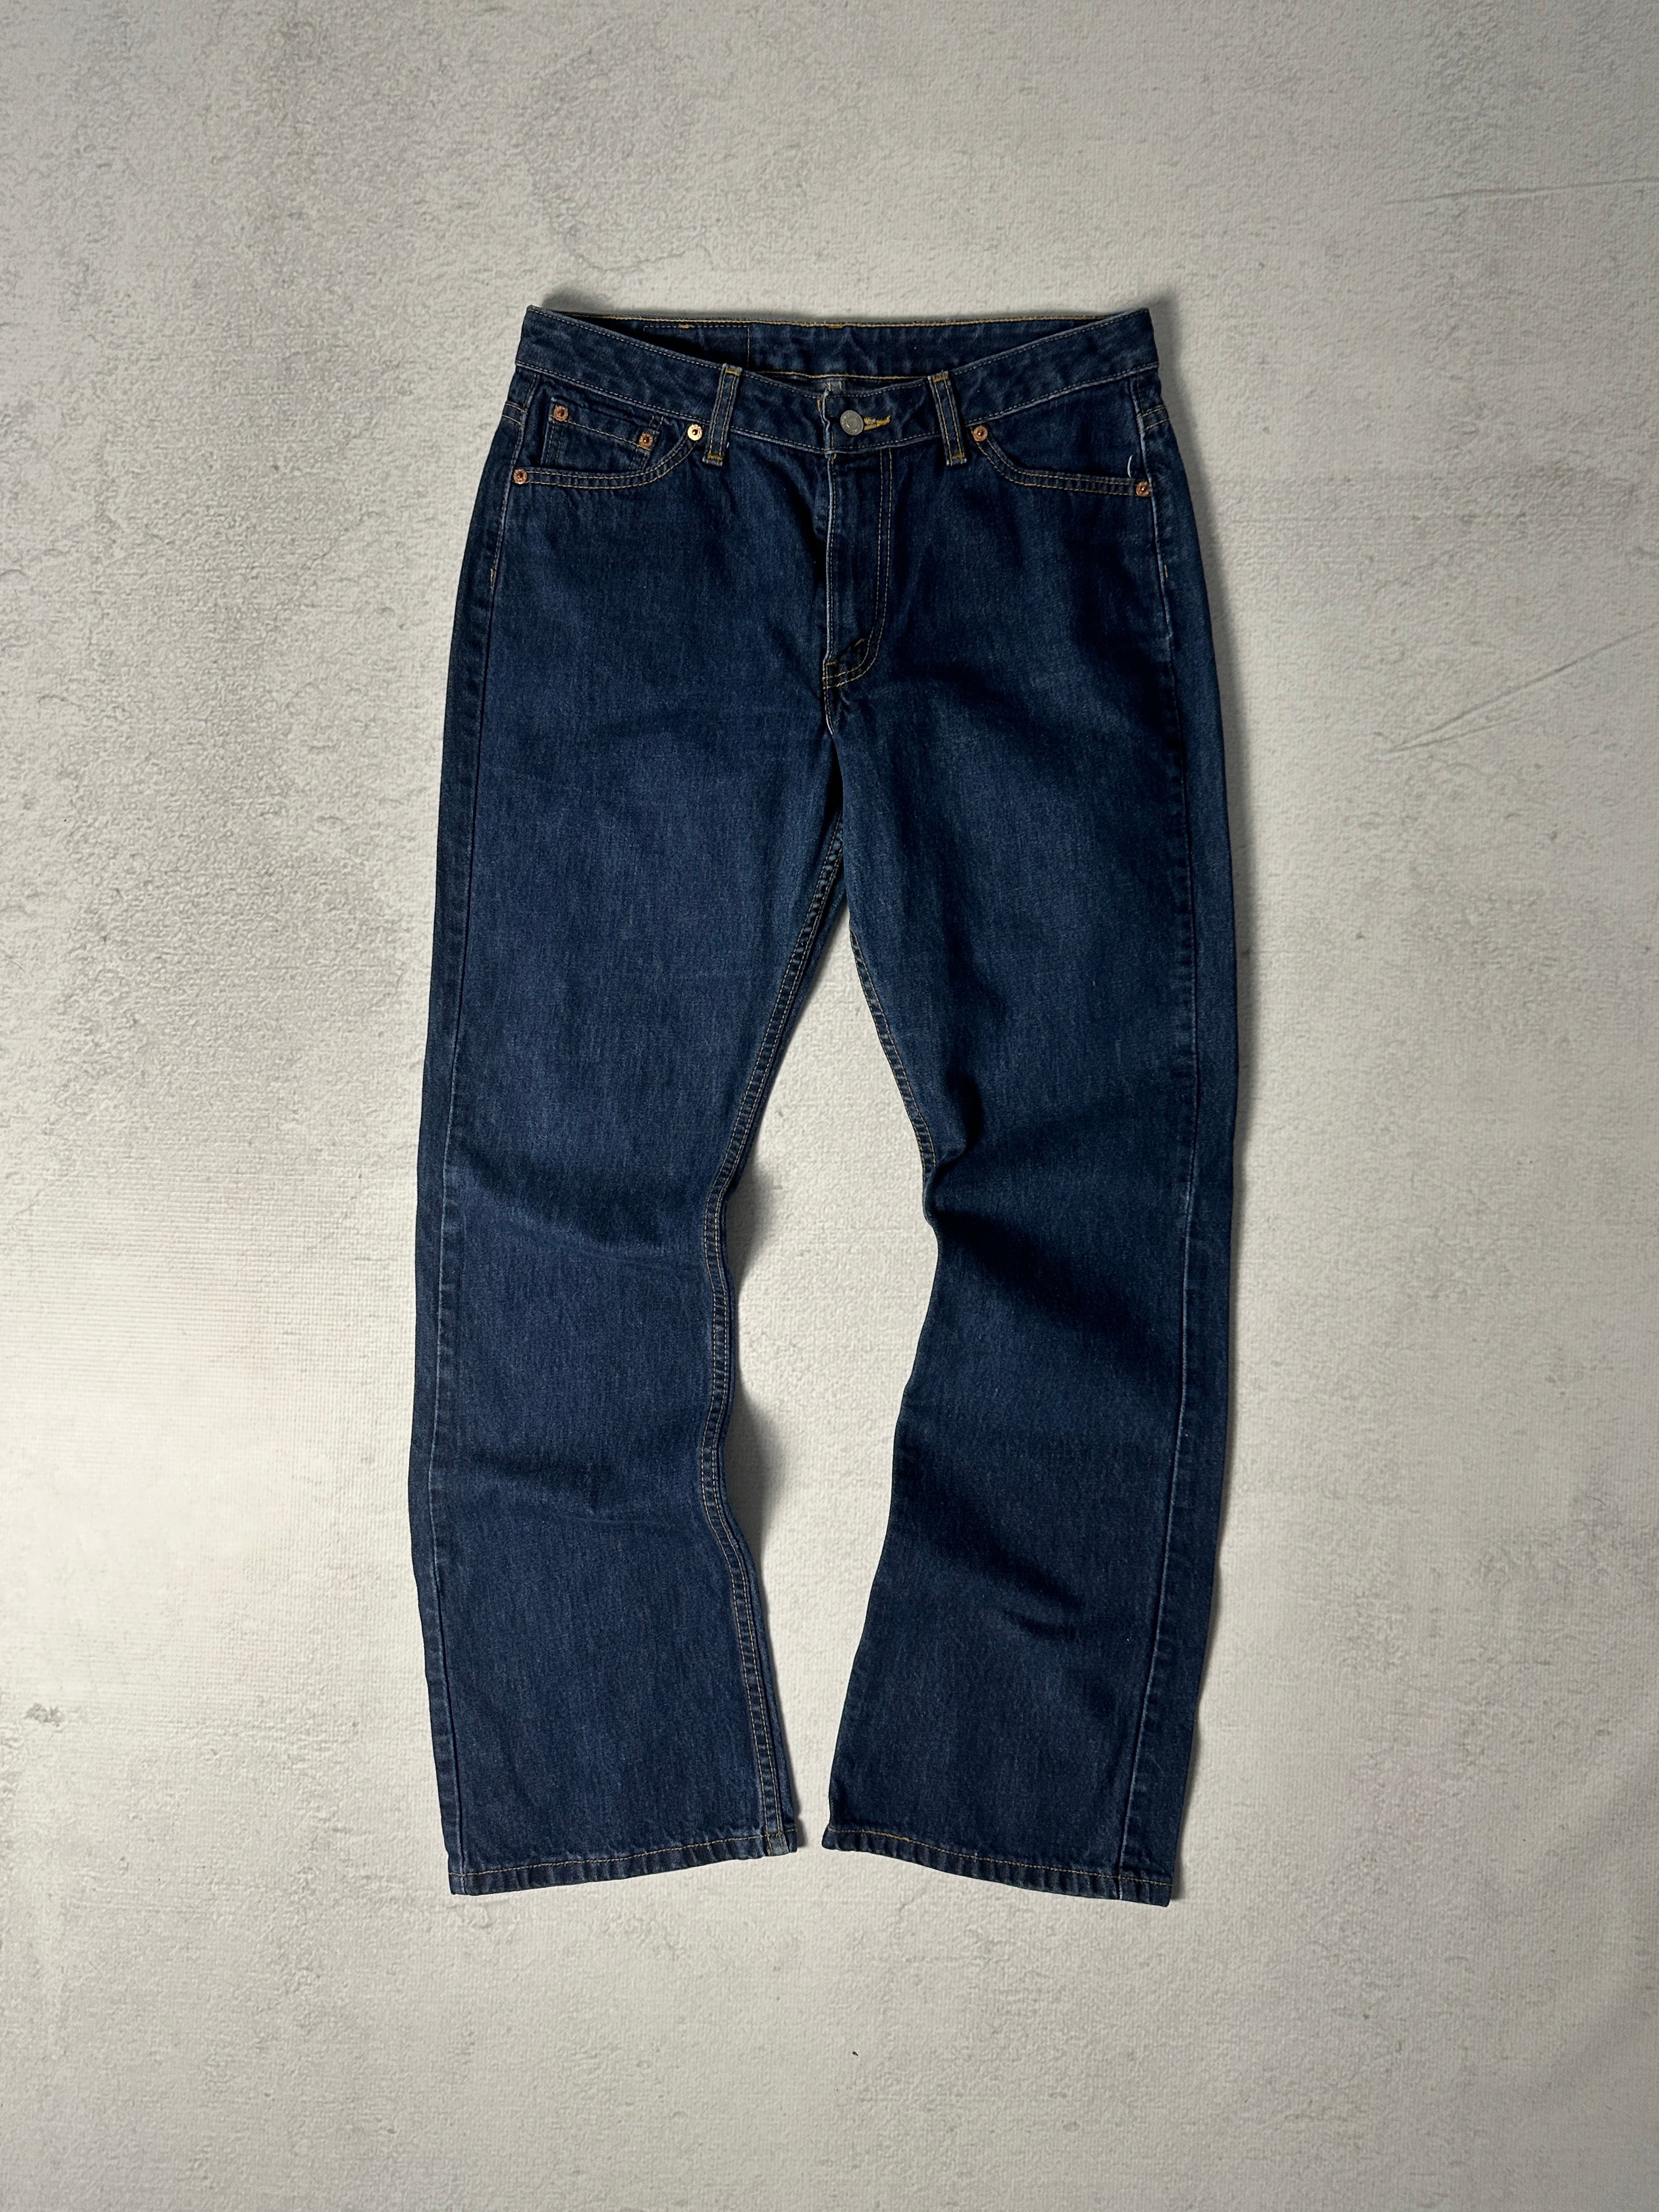 Vintage Levis Jeans - Women’s 34 X 32